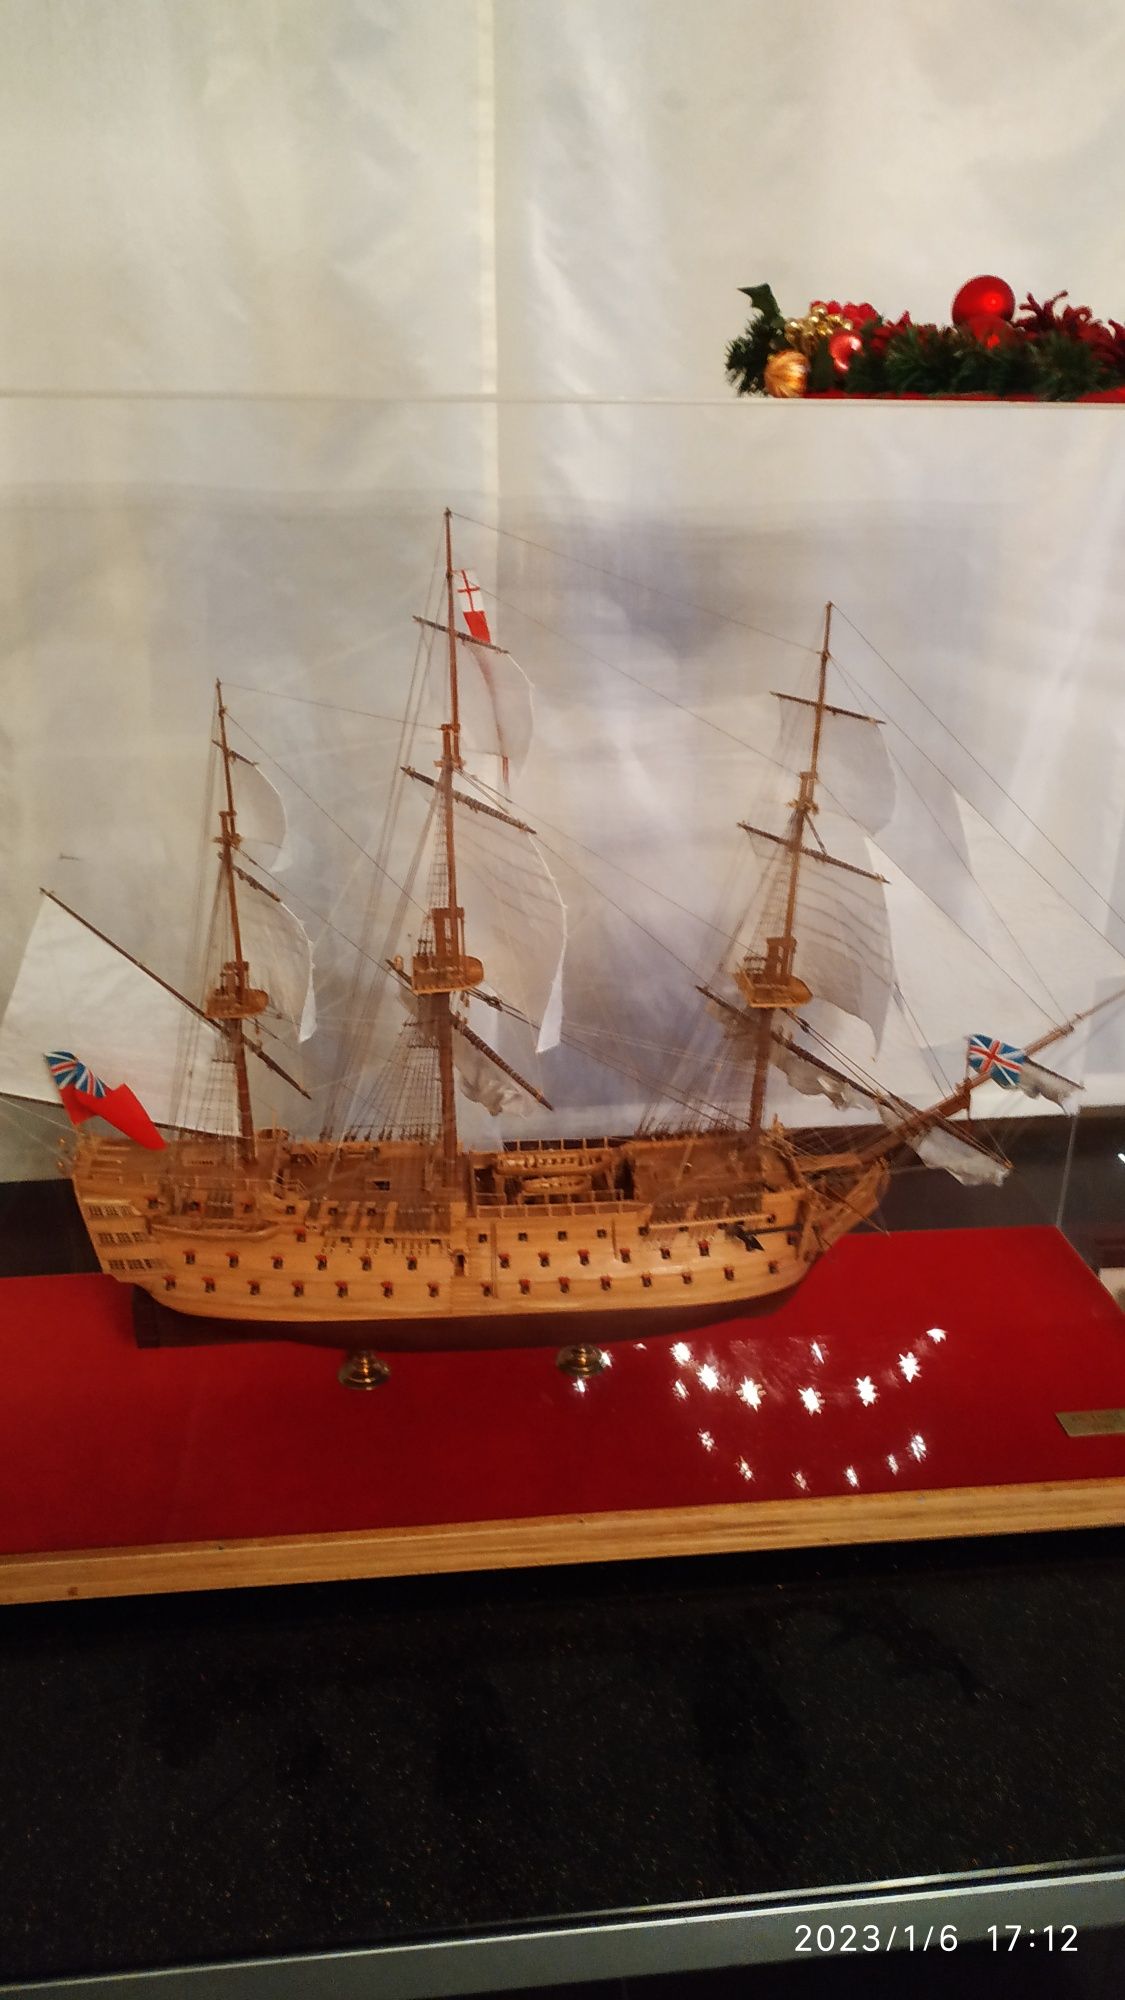 Модель флагманского корабля адмирала Нельсона "Виктори" 1765 года